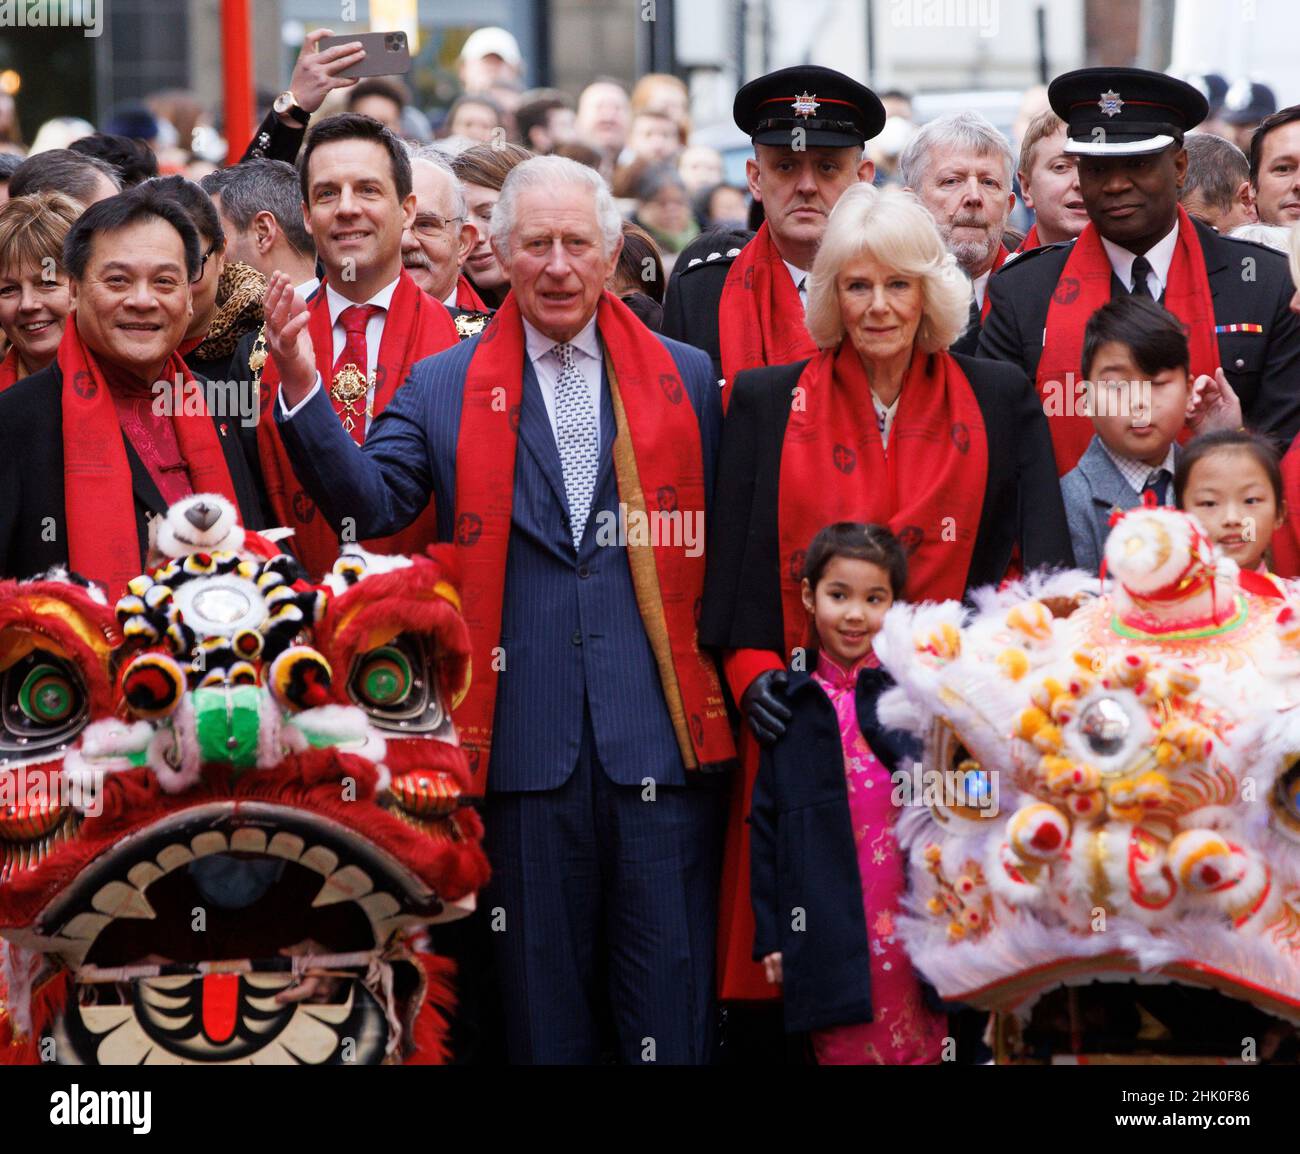 Londres, Royaume-Uni.1st févr. 2022.Le Prince Charles et Camilla, duchesse de Cornwall, portent des foulards rouges lorsqu'ils visitent Chinatown pour célébrer le nouvel an lunaire chinois qui commence le 1st février.C'est l'année du tigre.Crédit : Mark Thomas/Alay Live News Banque D'Images